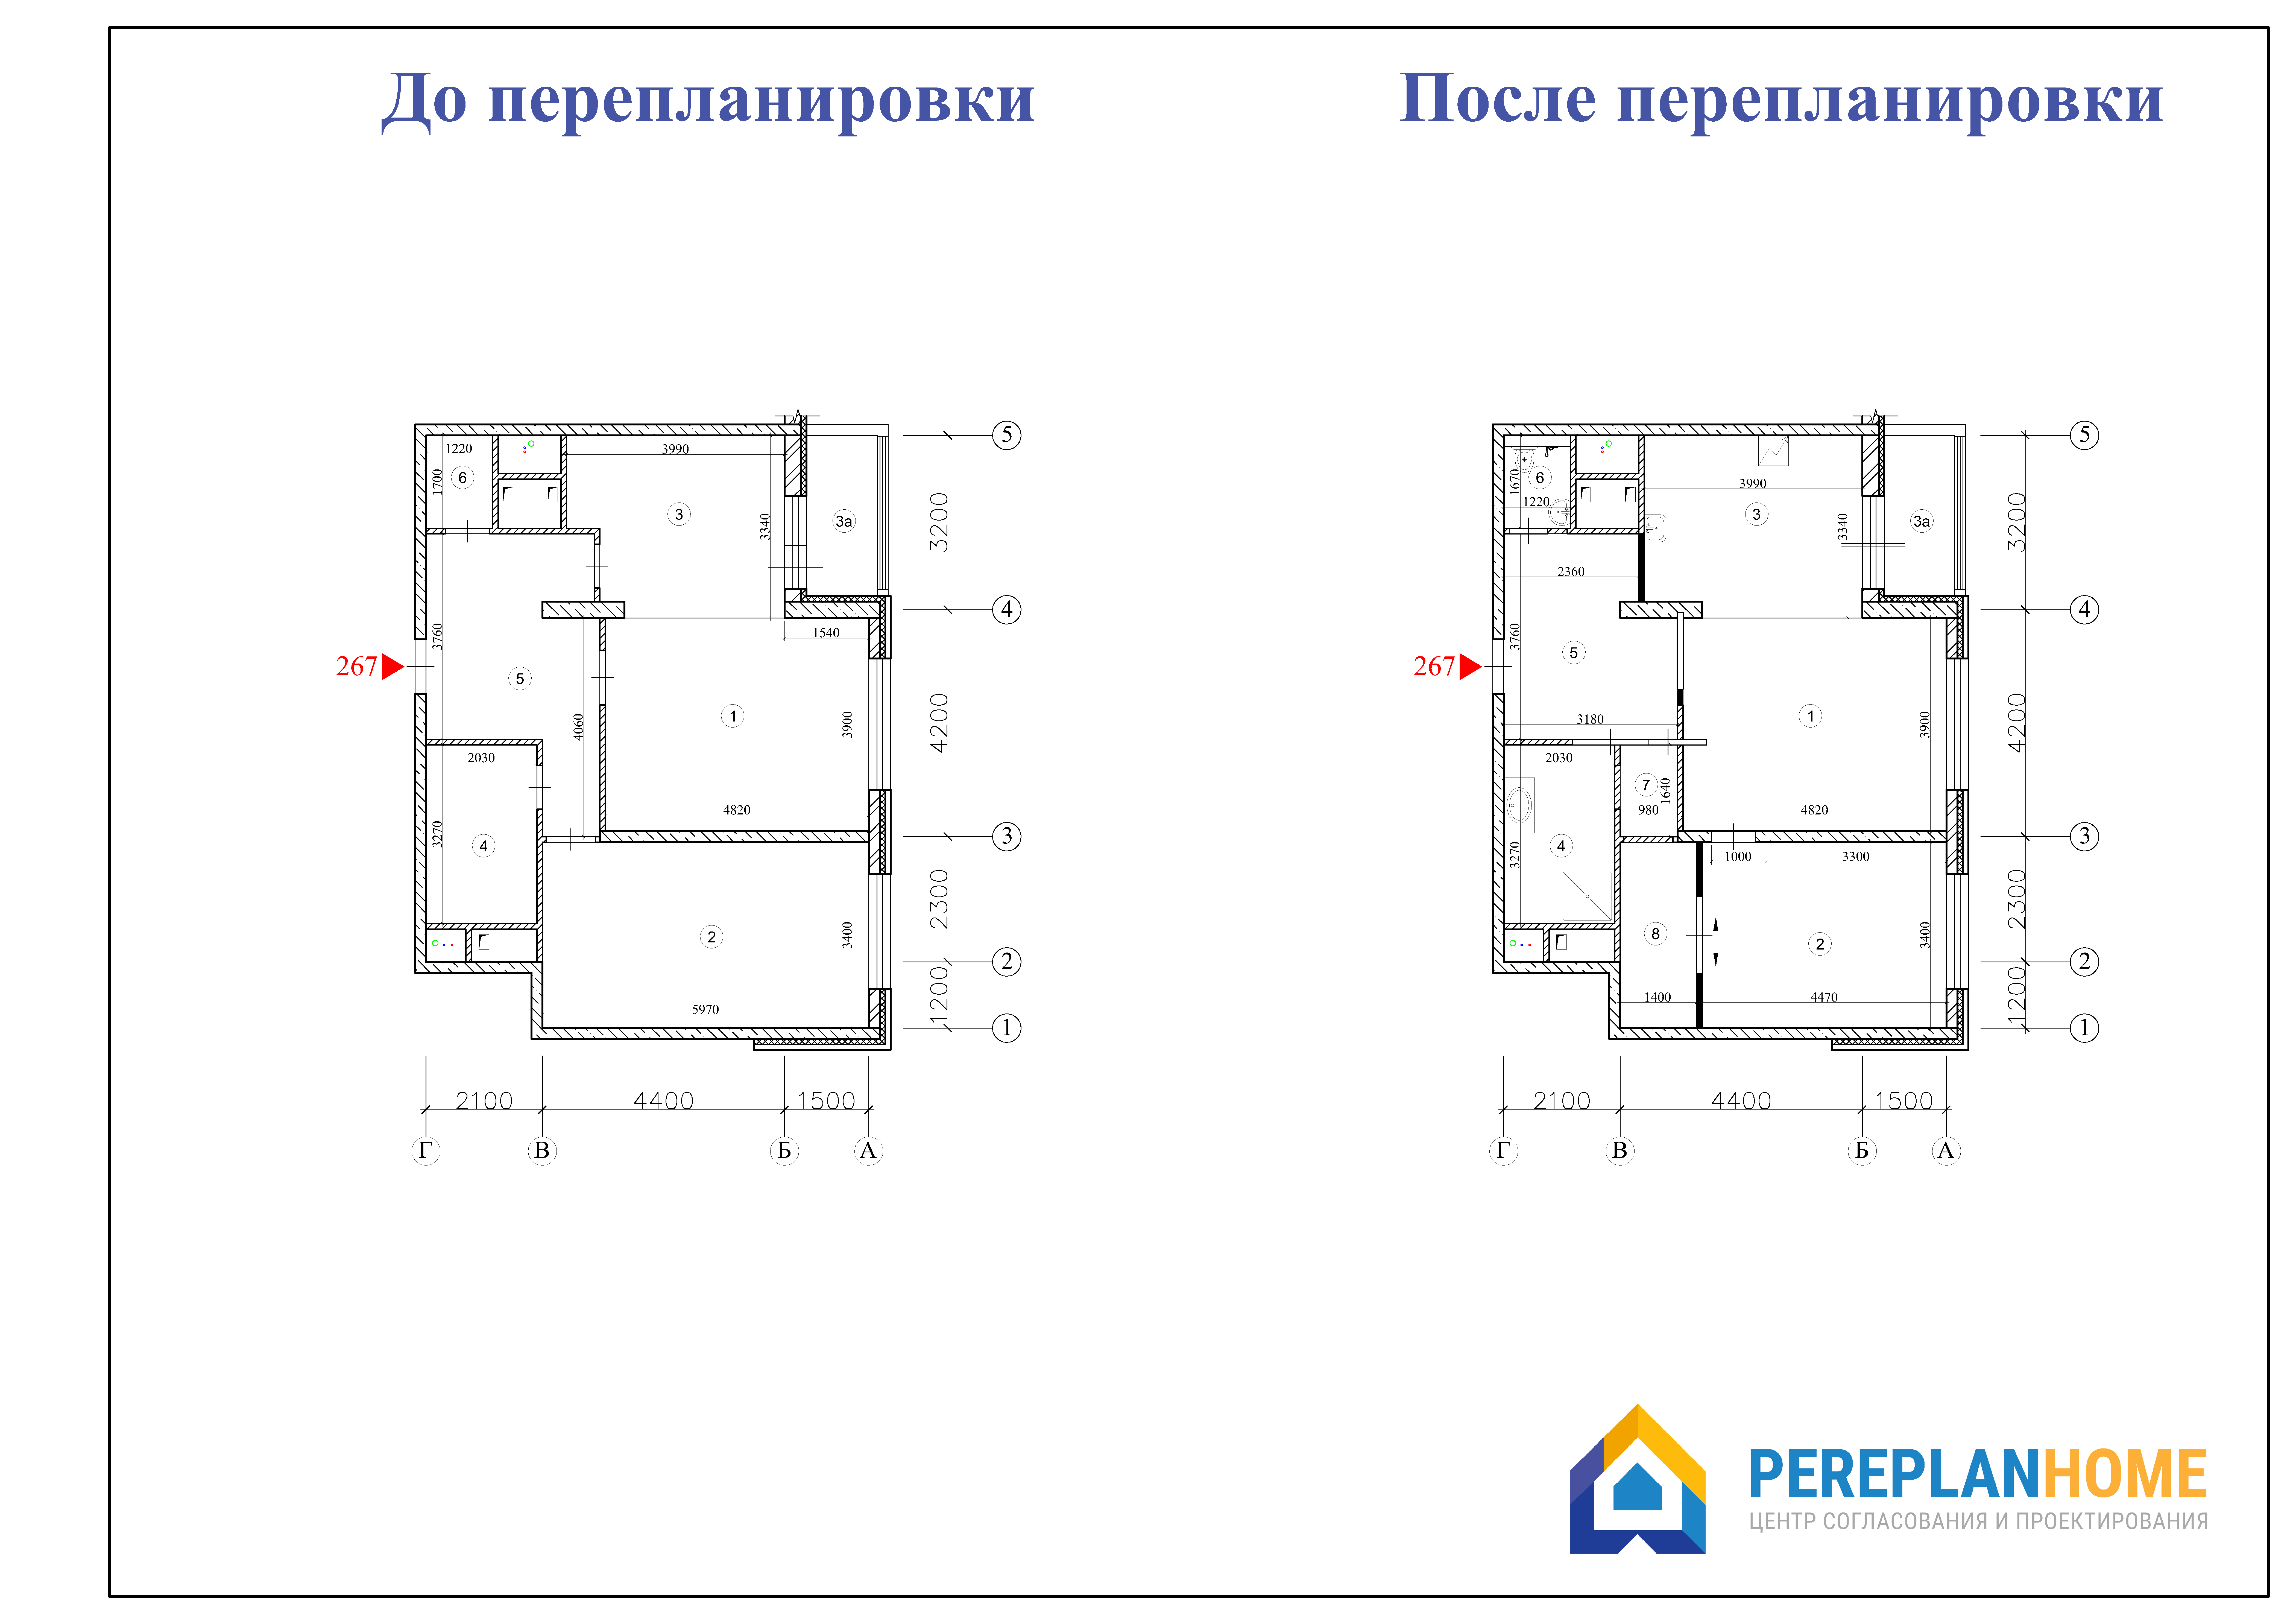 План перепланировки квартиры. Перепланировка чертеж. Перепланировка квартиры чертеж. План квартиры до и после перепланировки. Реконструкция перепланировка переустройство